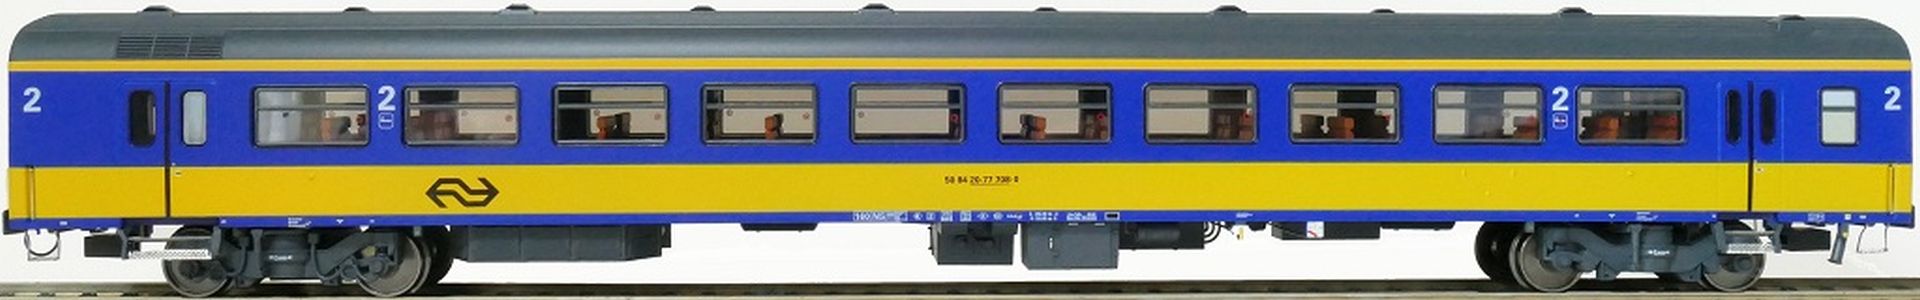 Exact-Train EX11167 - Personenwagen ICR, B, Originalversion, NS, Ep.IV, mit Innenbel. und Figuren